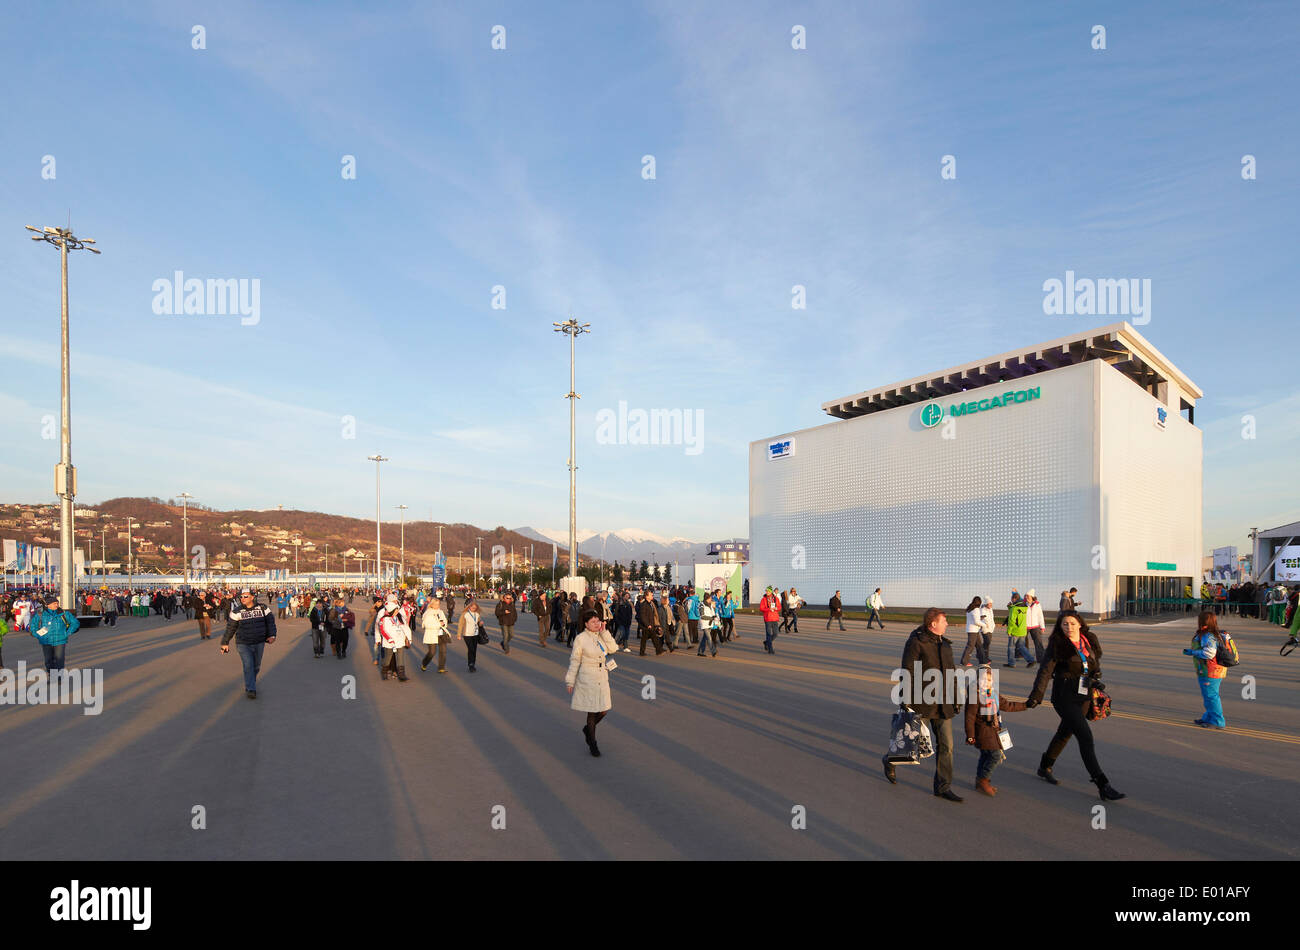 MegaFon, Sochi Olimpiadi Invernali 2014, Sochi, Russia. Architetto: Asif Khan, 2014. Vista generale del Parco Olimpico con i visitatori. Foto Stock